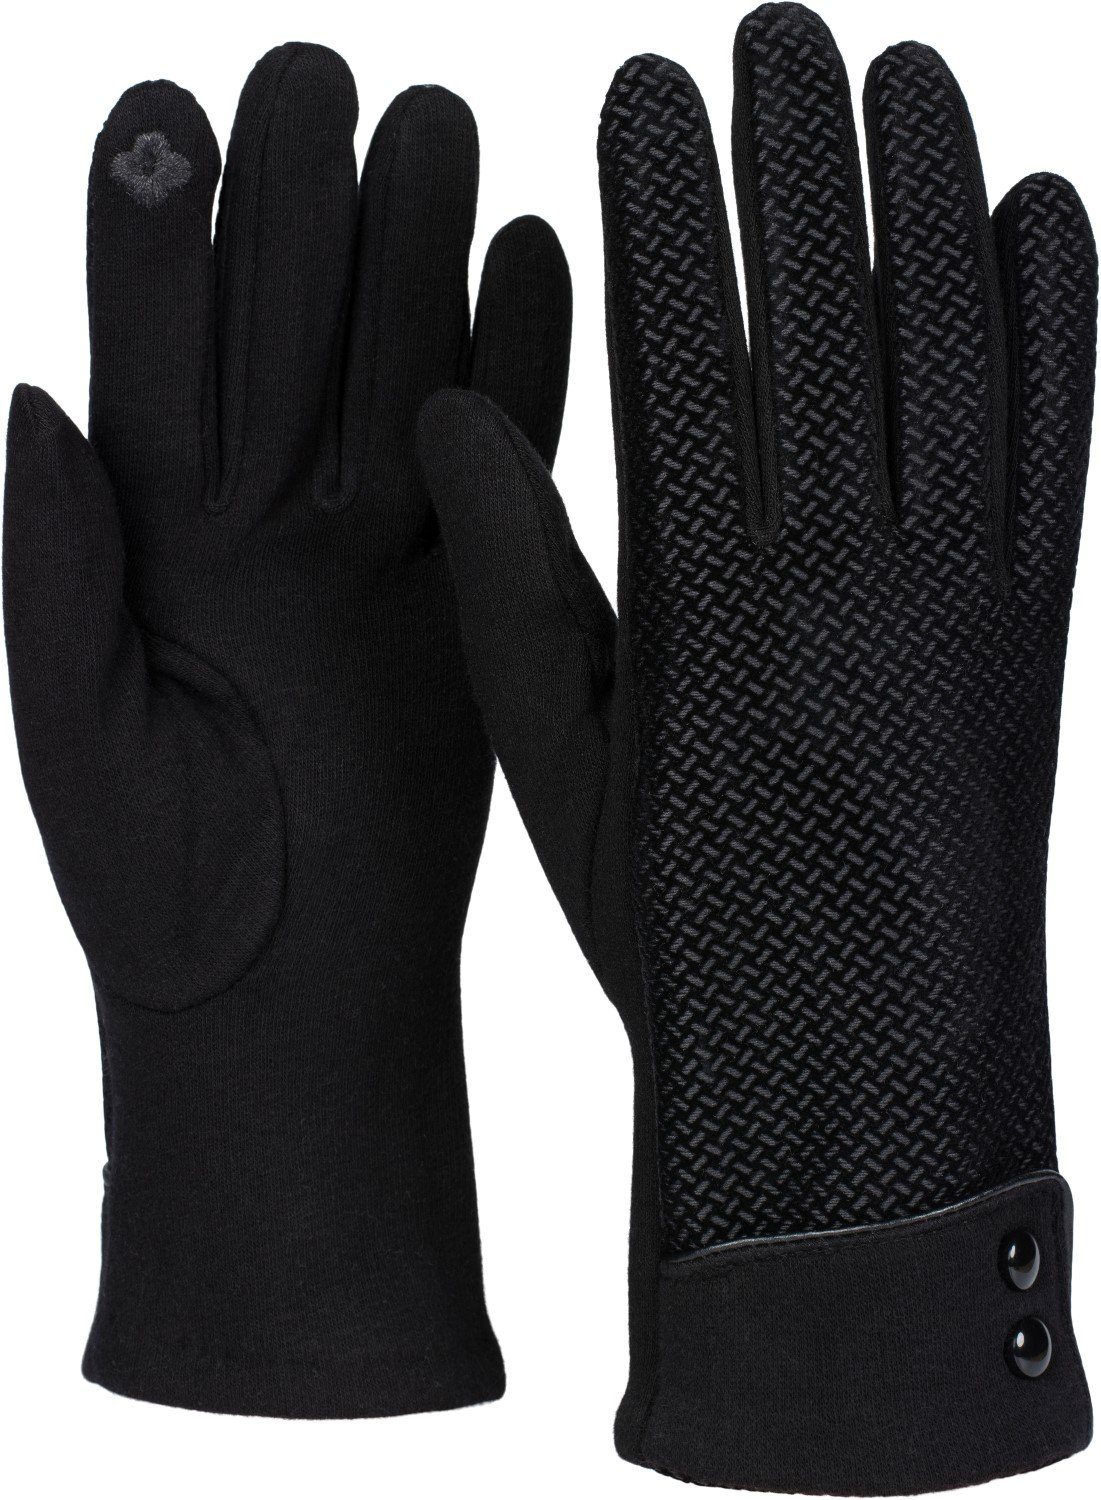 styleBREAKER Baumwollhandschuhe Touchscreen Handschuhe mit weichem Riffel Muster Schwarz